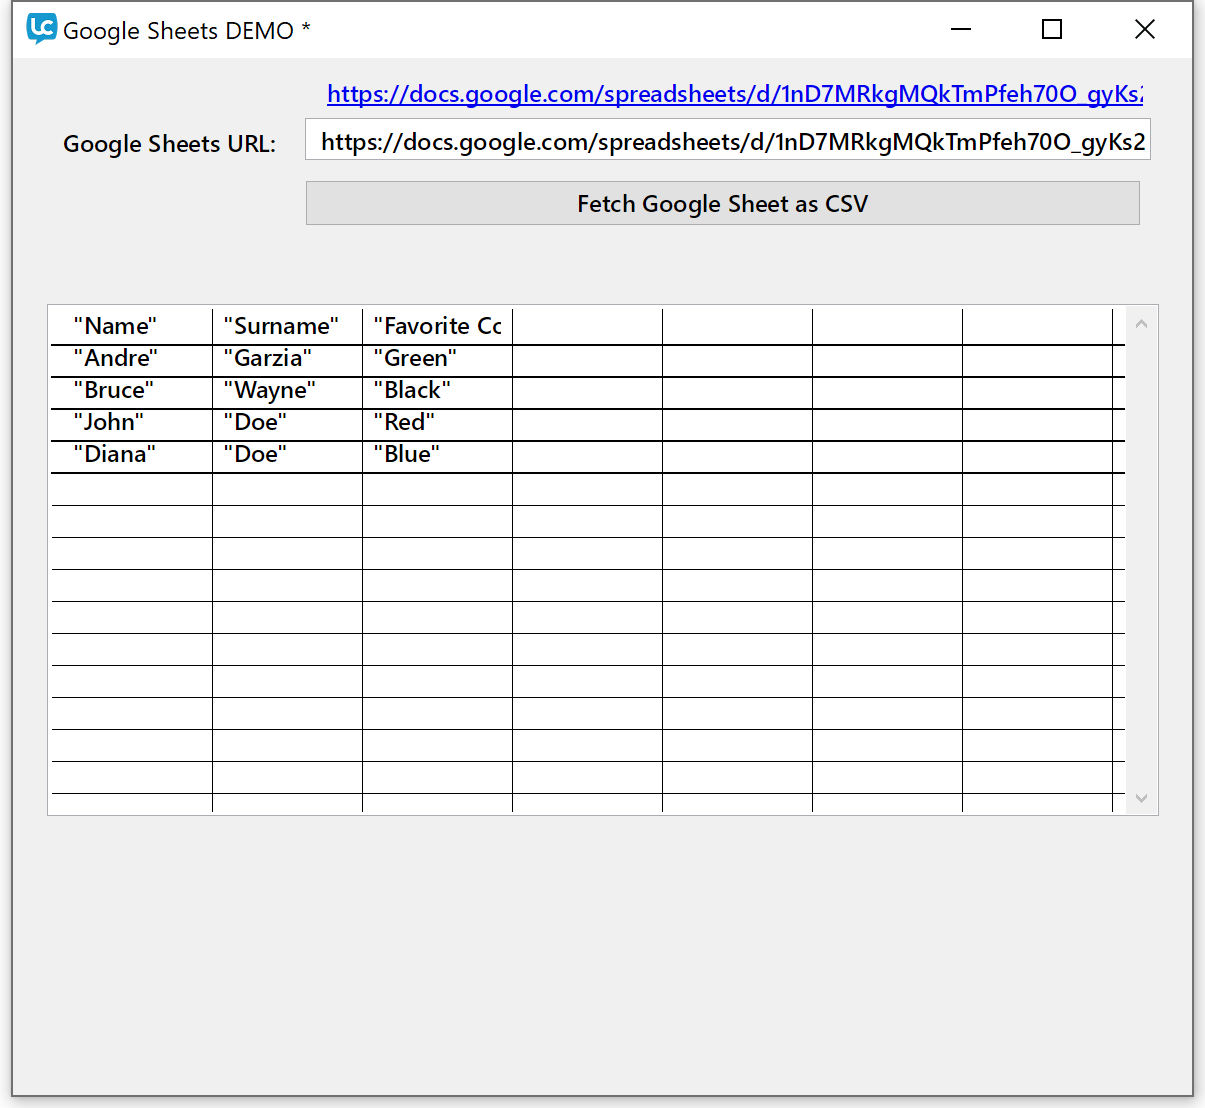 Google Sheets DEMO stack